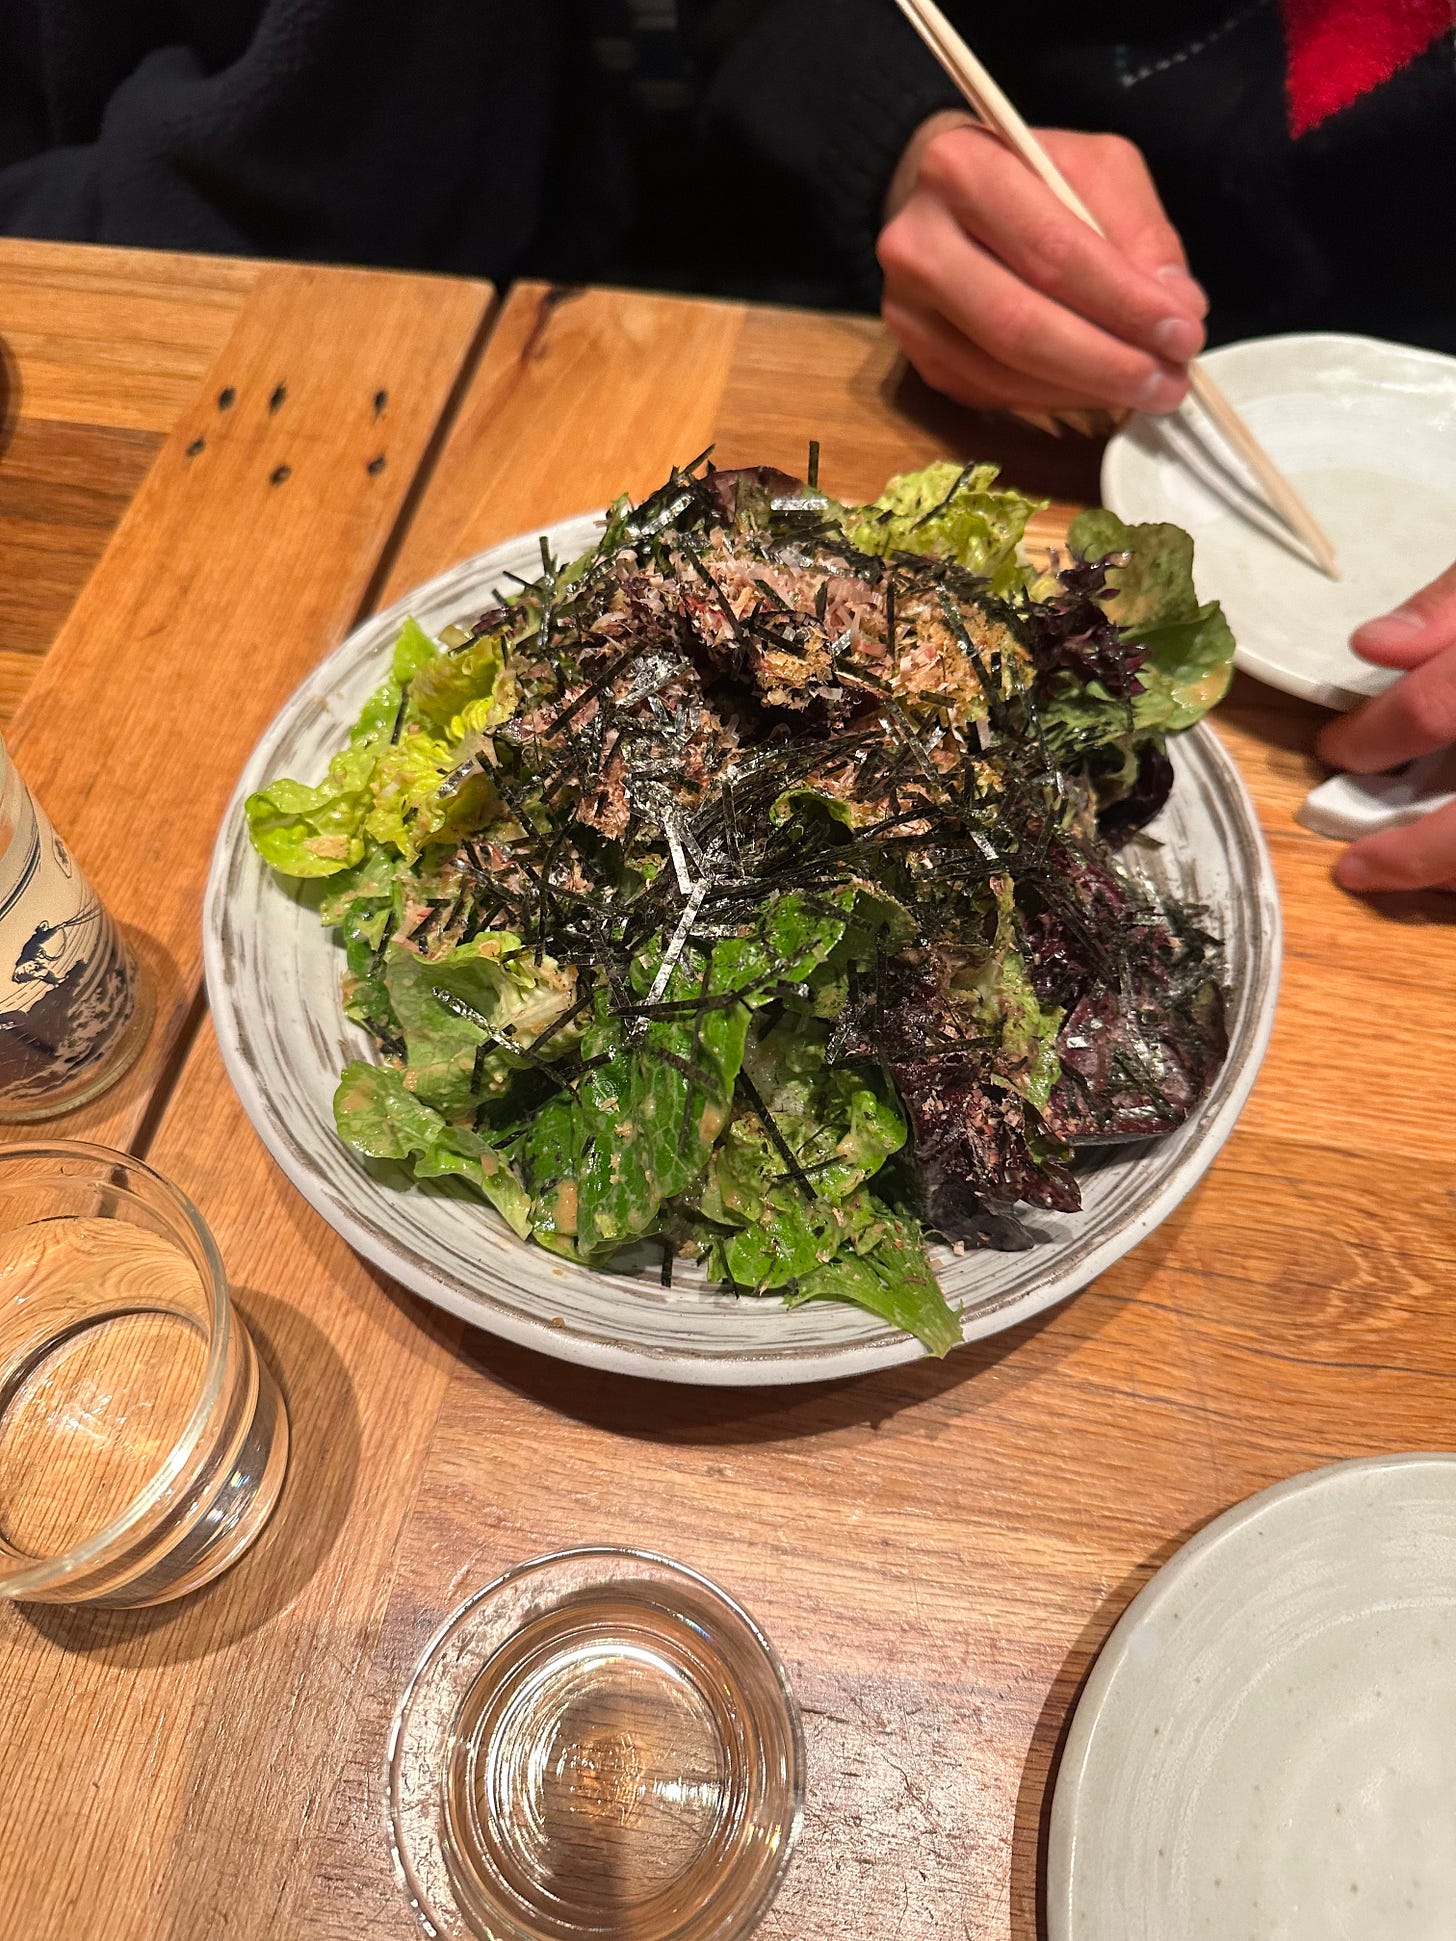 Tsubaki's Japanese Caesar salad